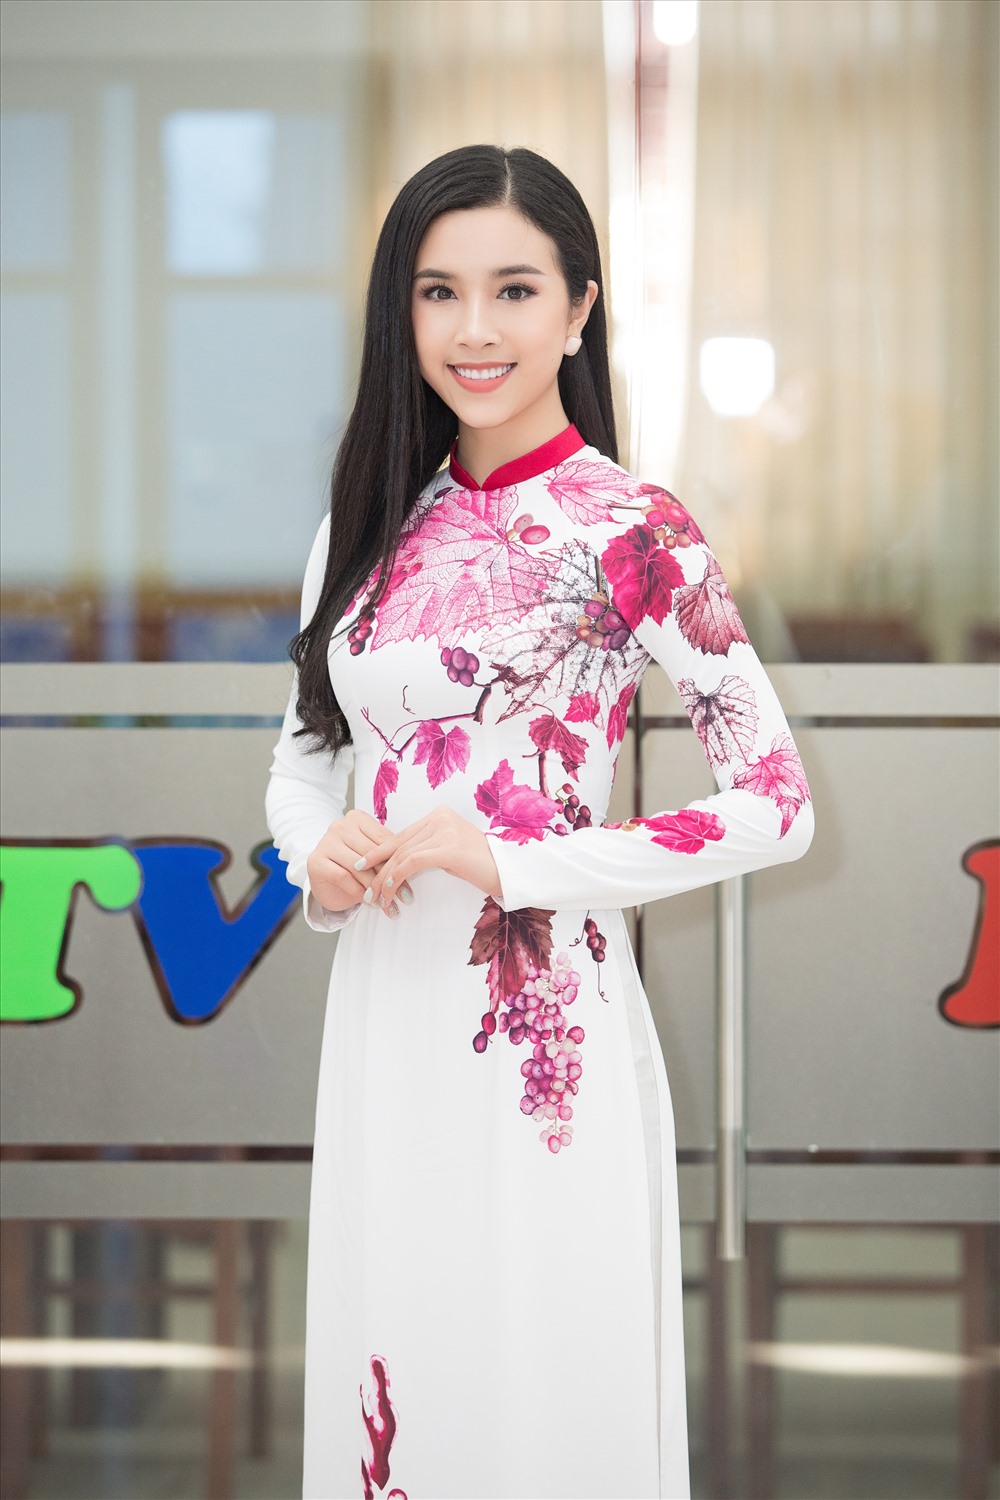 Tuy thường xuyên gặp gỡ trong công việc nhưng đây là lần đầu tiên top 3 Hoa hậu Việt Nam cùng nhau trở thành đại sứ của một lễ hội và được đích thân Tổng đạo diễn Hoàng Nhật Nam lên ý tưởng về trang phục, hình ảnh xuất hiện trong Lễ hội Nho vang lần này.